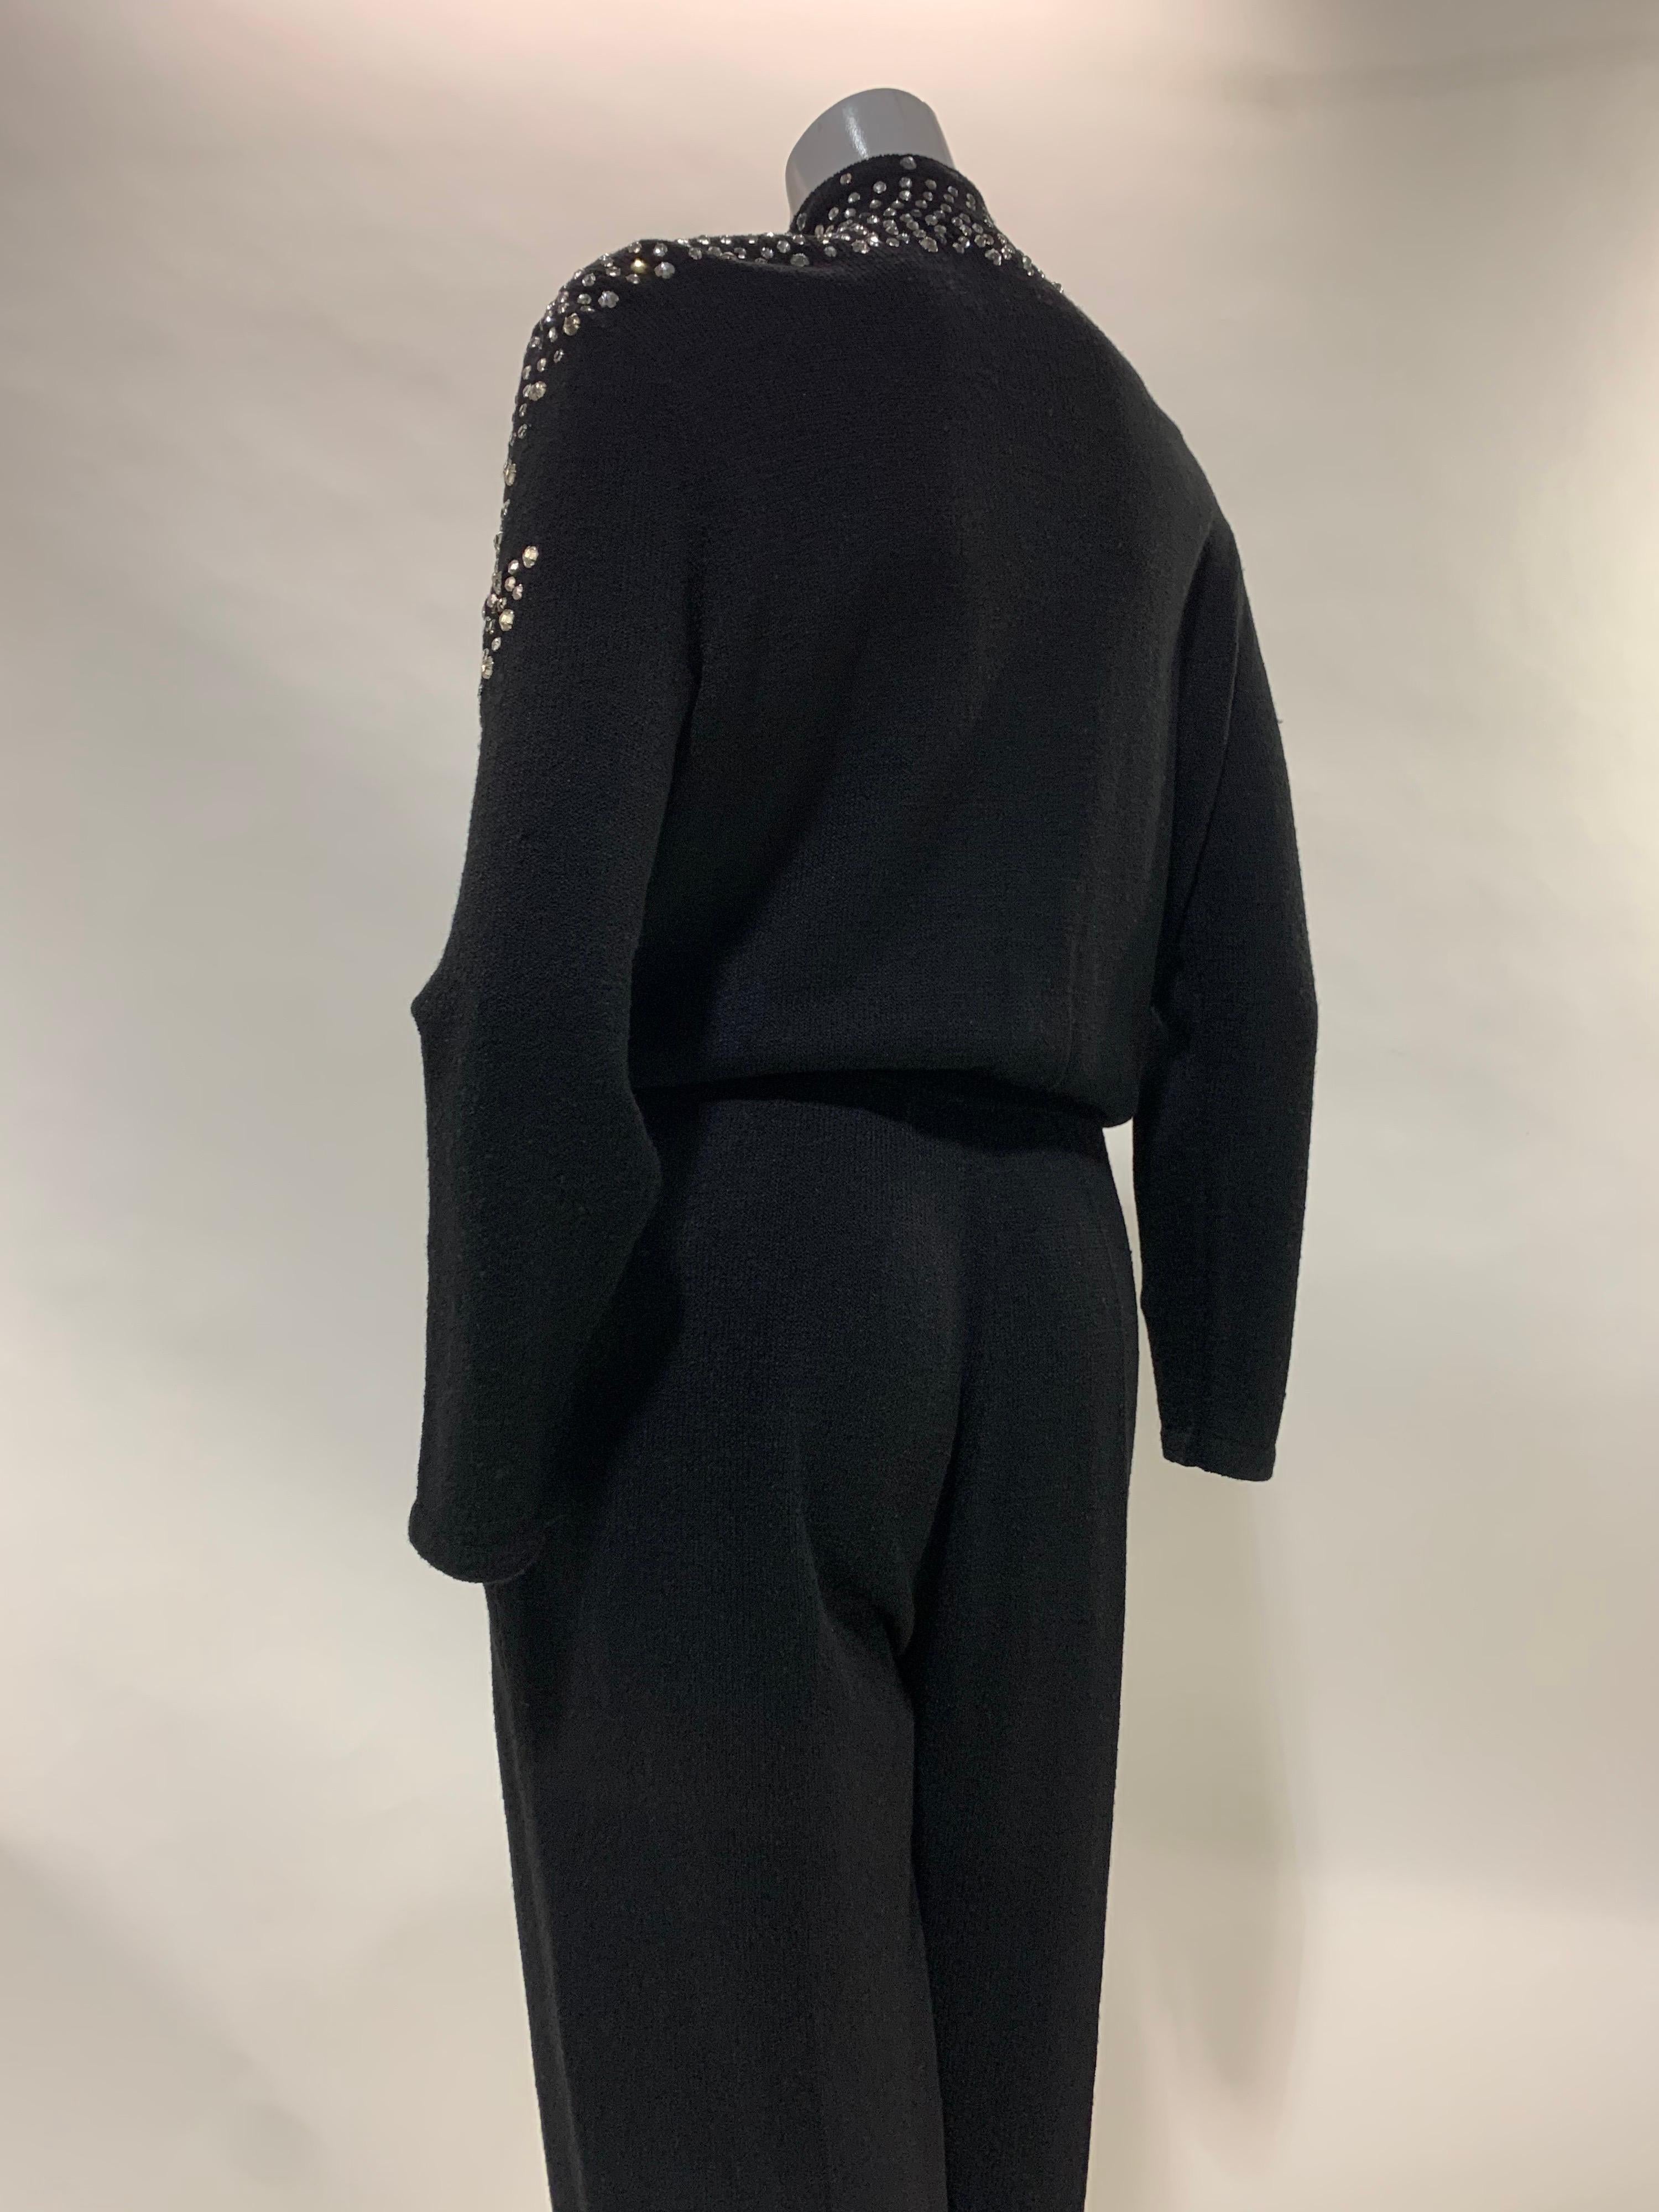 1980 Black Knit Jumpsuit w/ Structured Rhinestone Embellished Shoulder Arrows For Sale 7